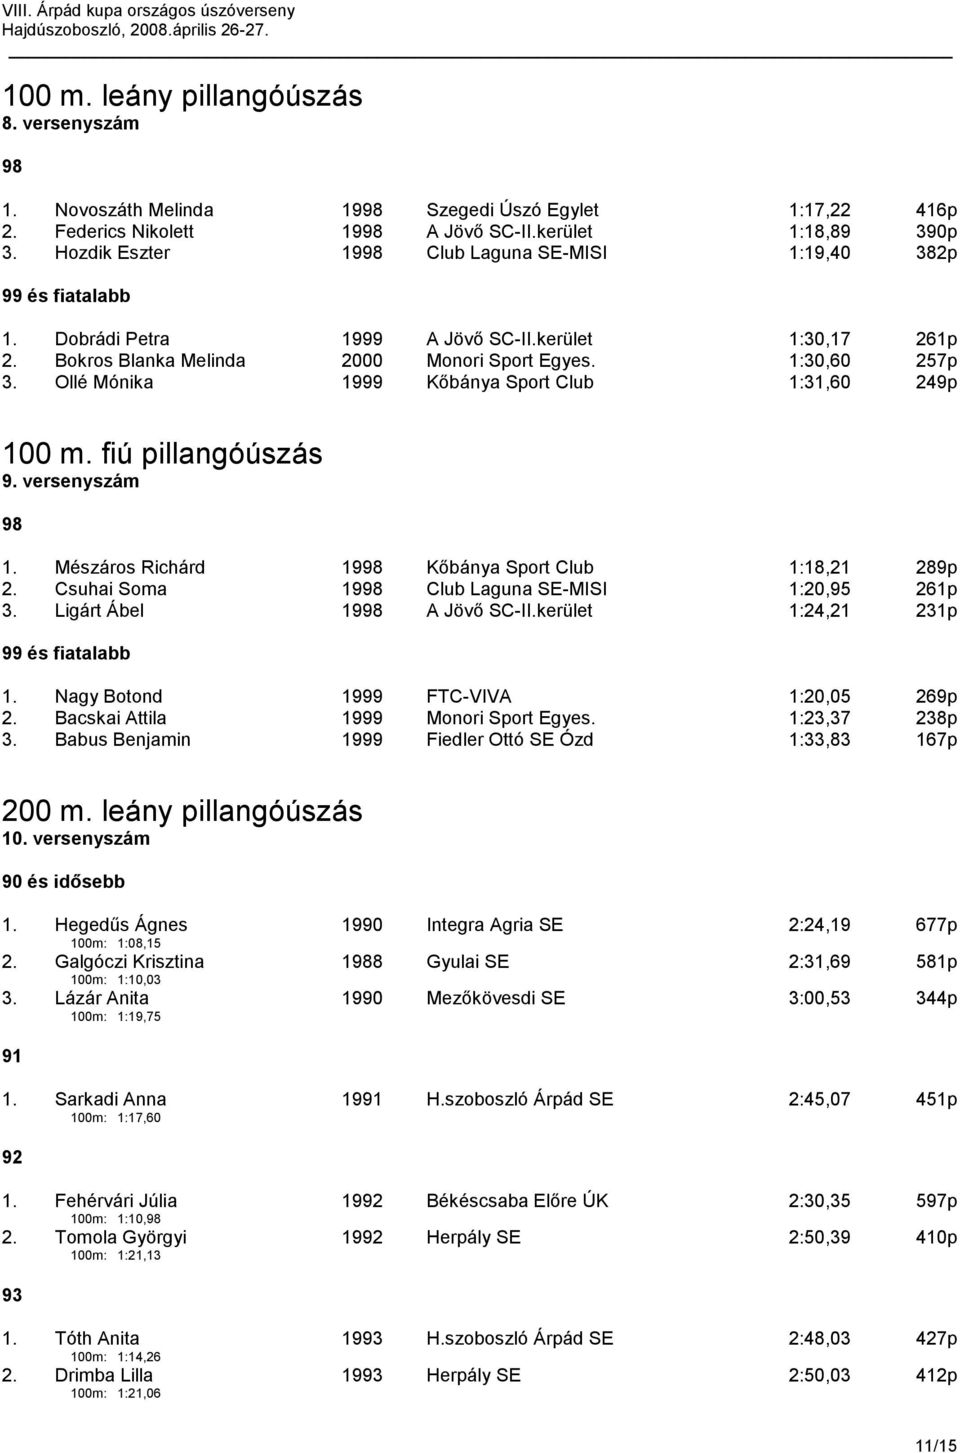 Ollé Mónika 1999 Kőbánya Sport Club 1:31,60 249p 100 m. fiú pillangóúszás 9. versenyszám 1. Mészáros Richárd 19 Kőbánya Sport Club 1:18,21 289p 2. Csuhai Soma 19 Club Laguna SE-MISI 1:20, 261p 3.